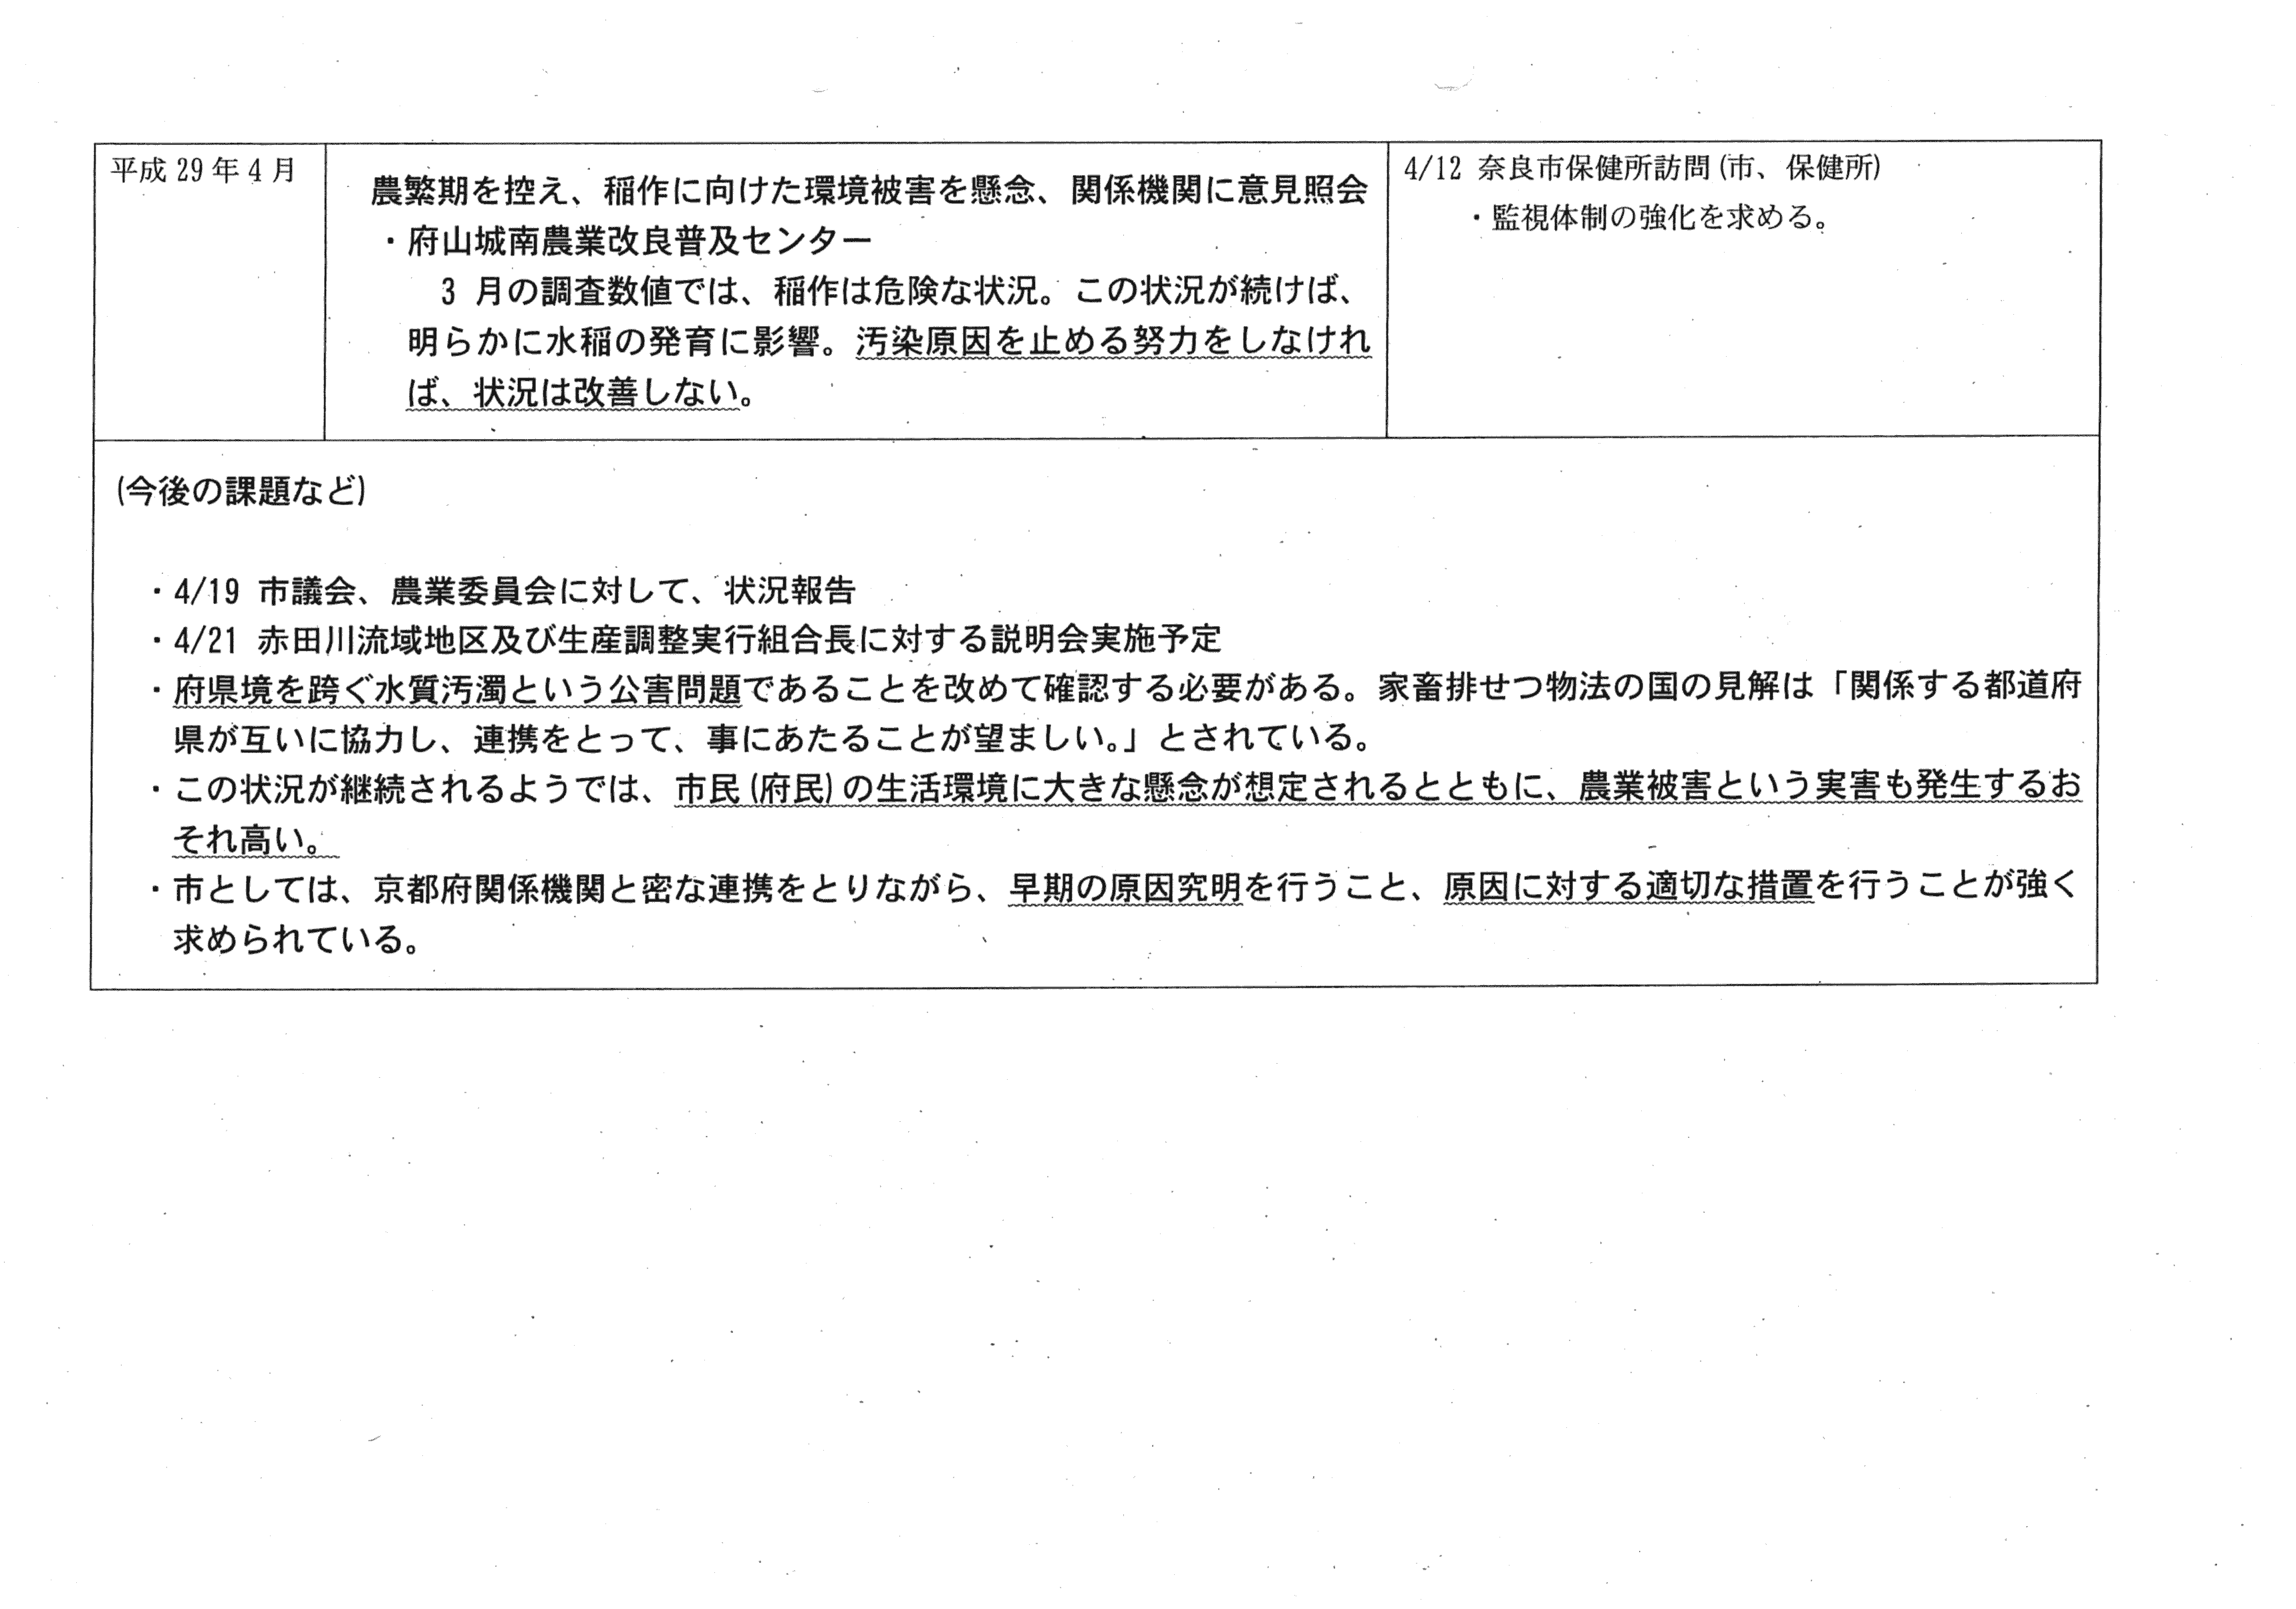 平成29年4月24日-赤田川の水質問題について-04